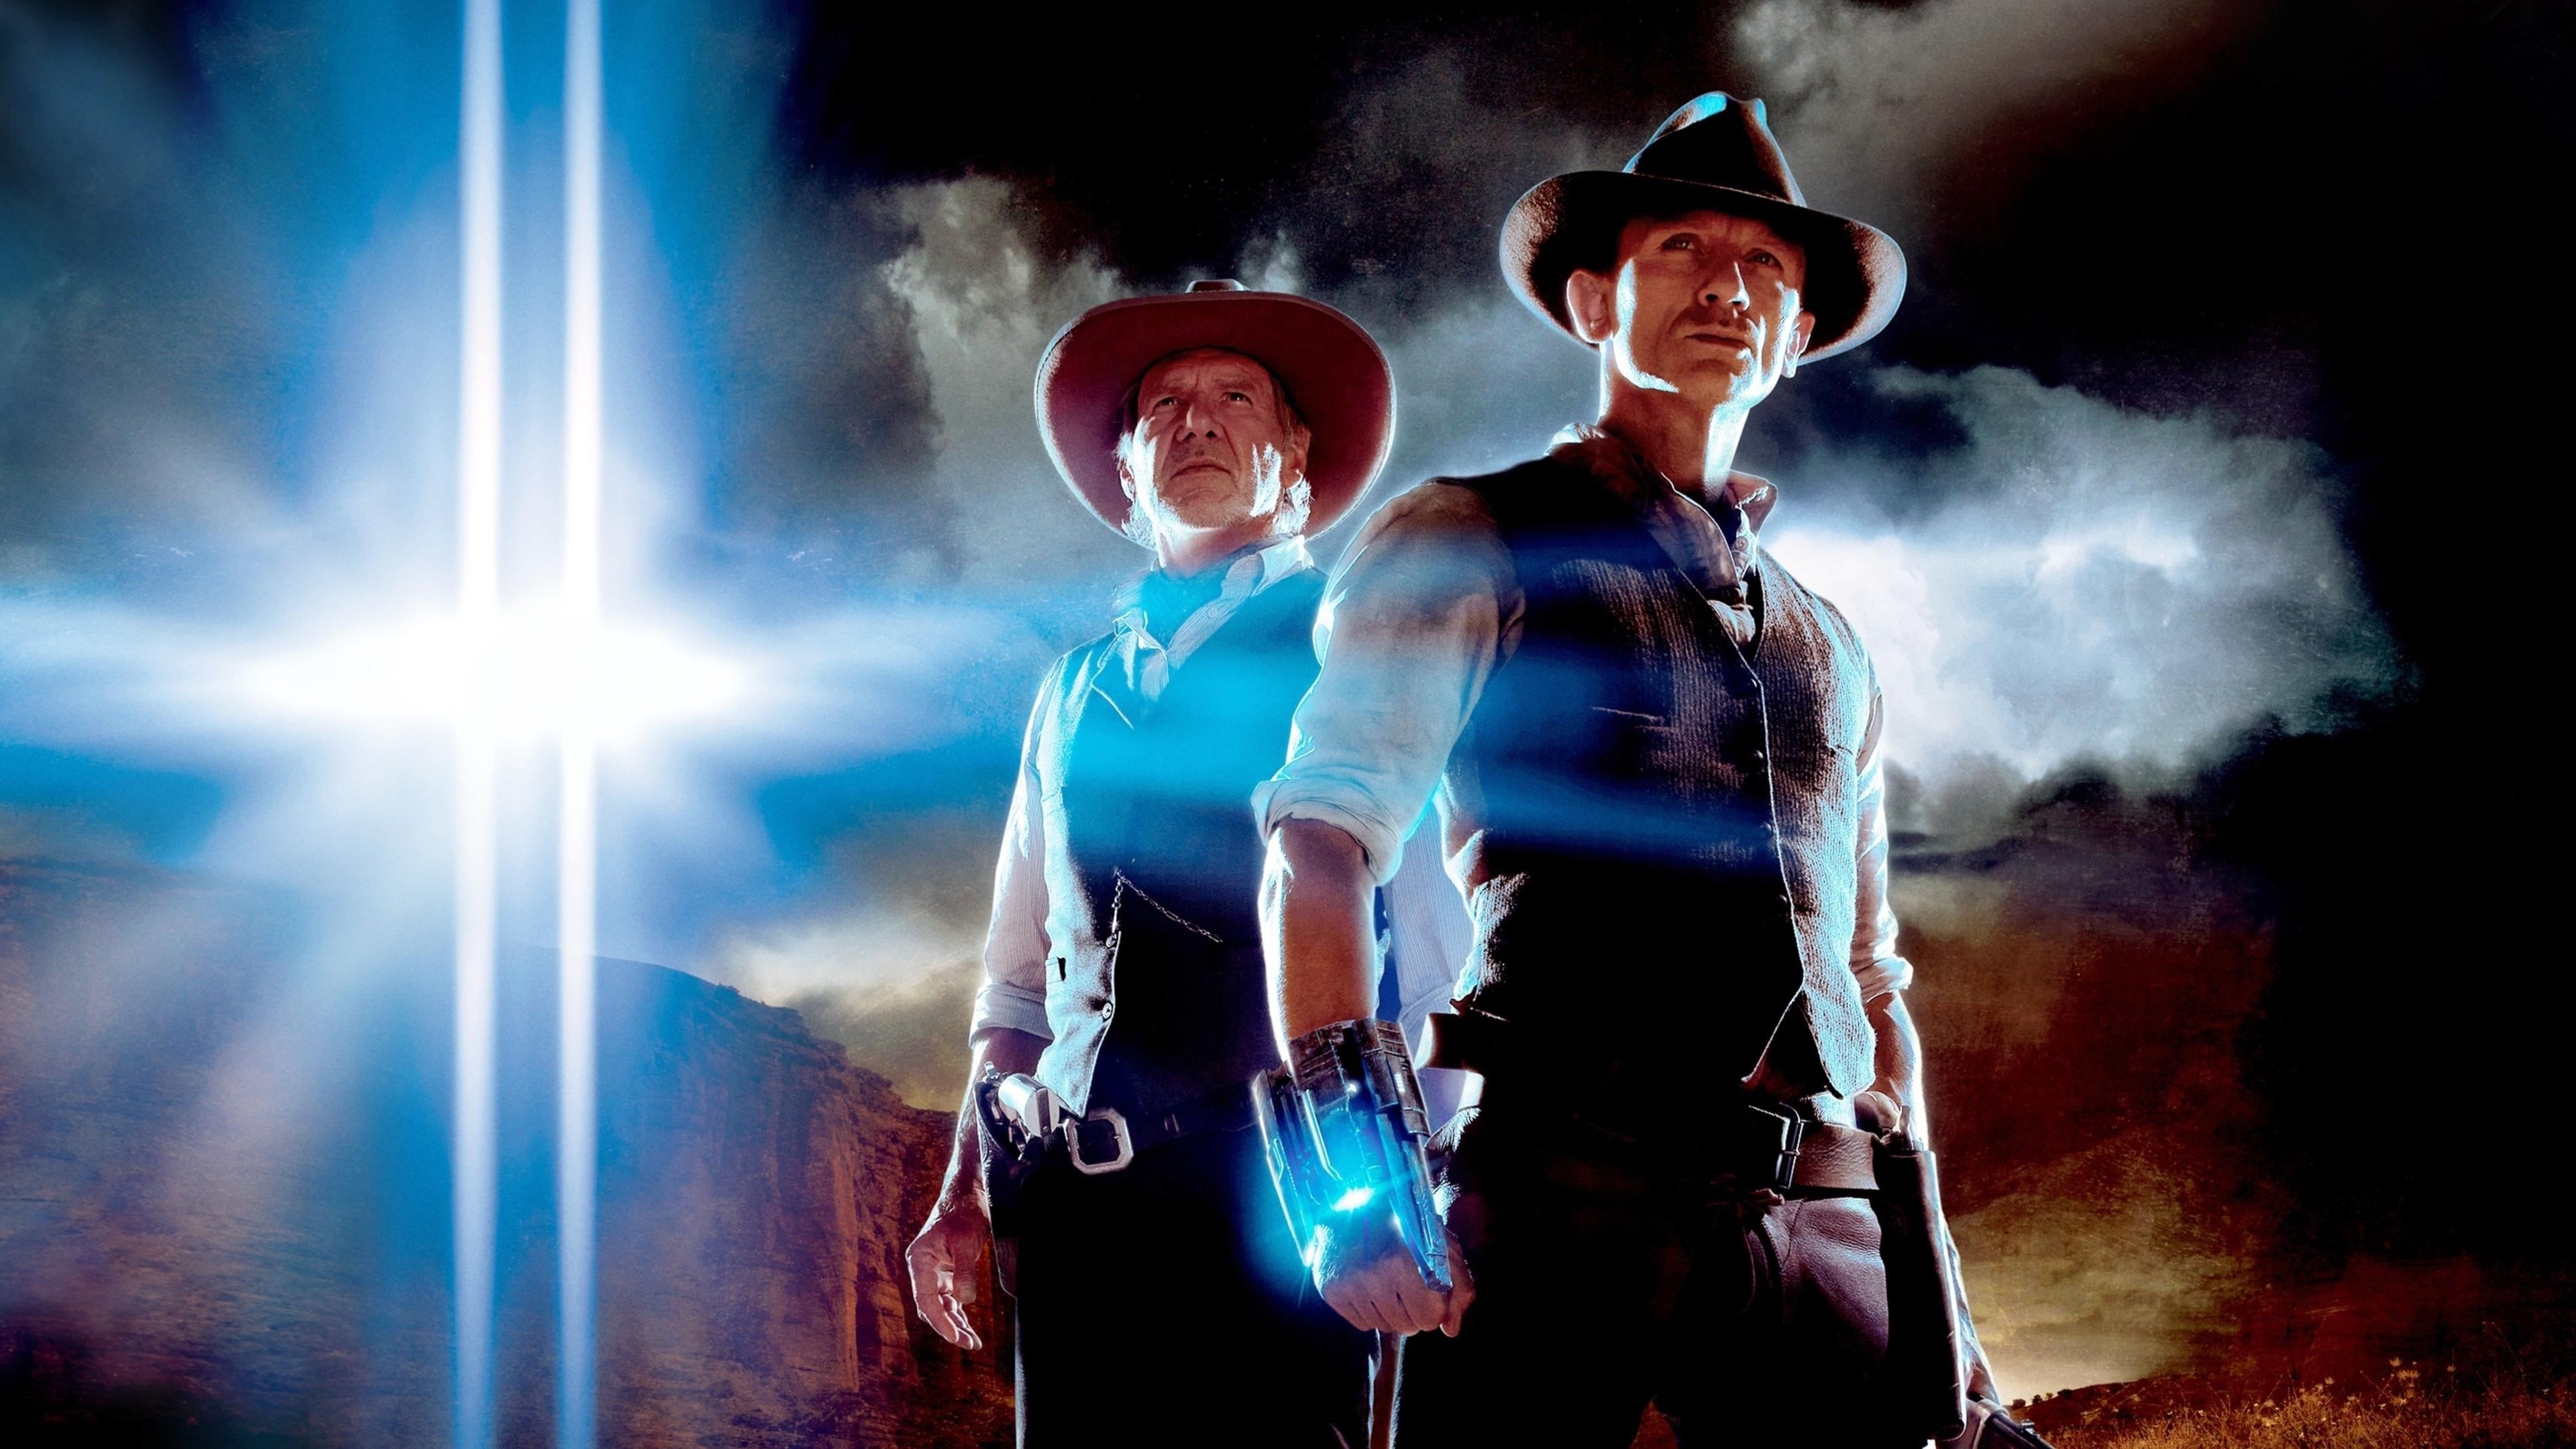 Cowboys & Envahisseurs (2011)